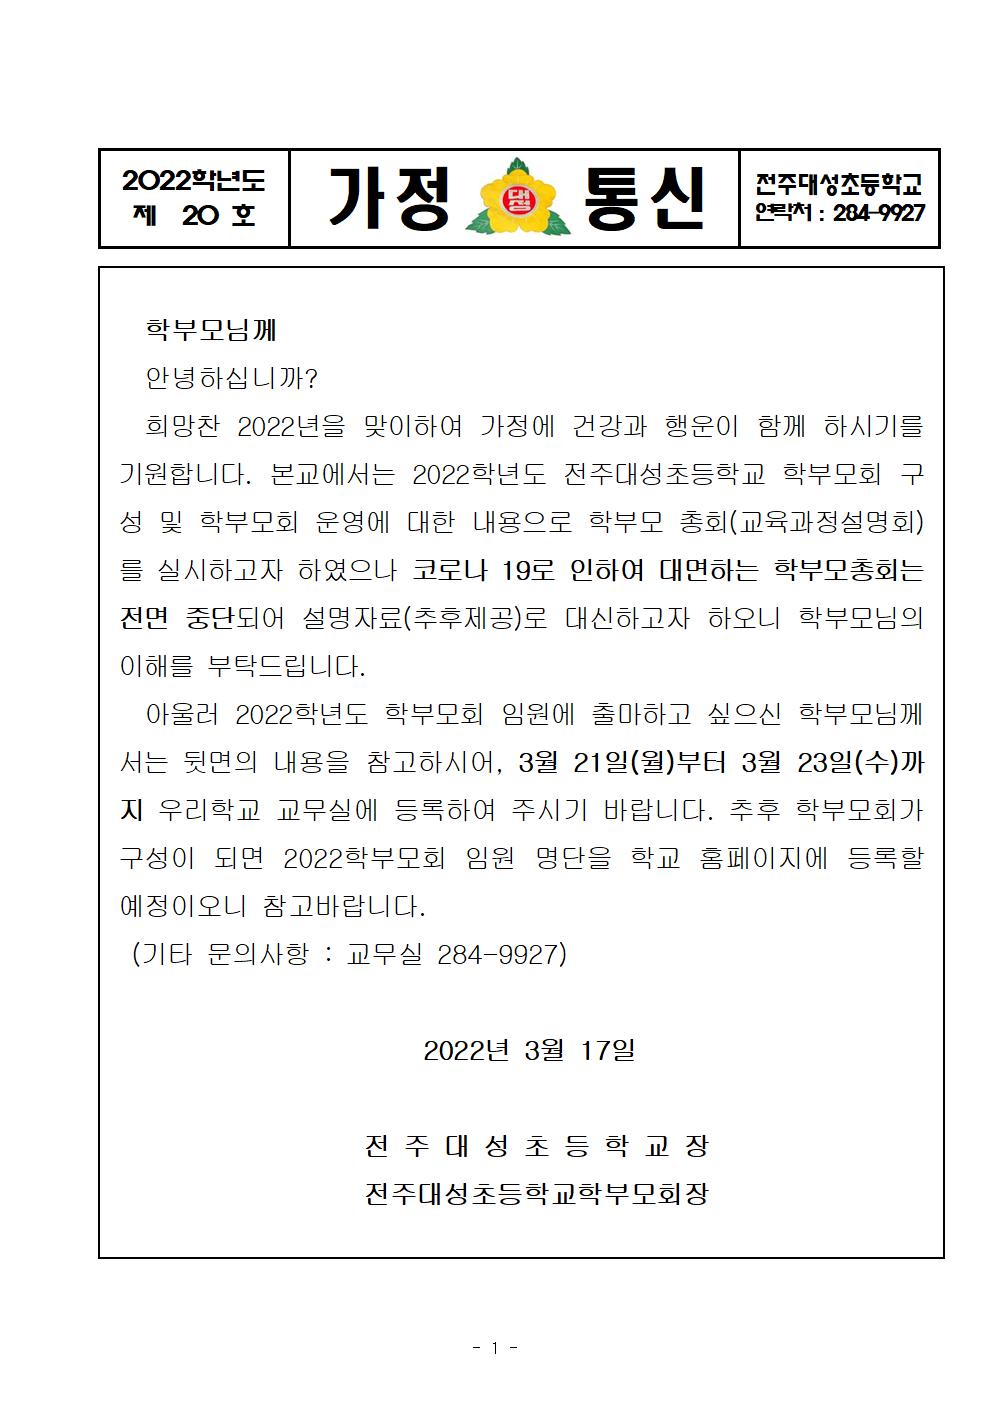 제20호-학부모회 총회 개최 및 학부모회 임원 선출001